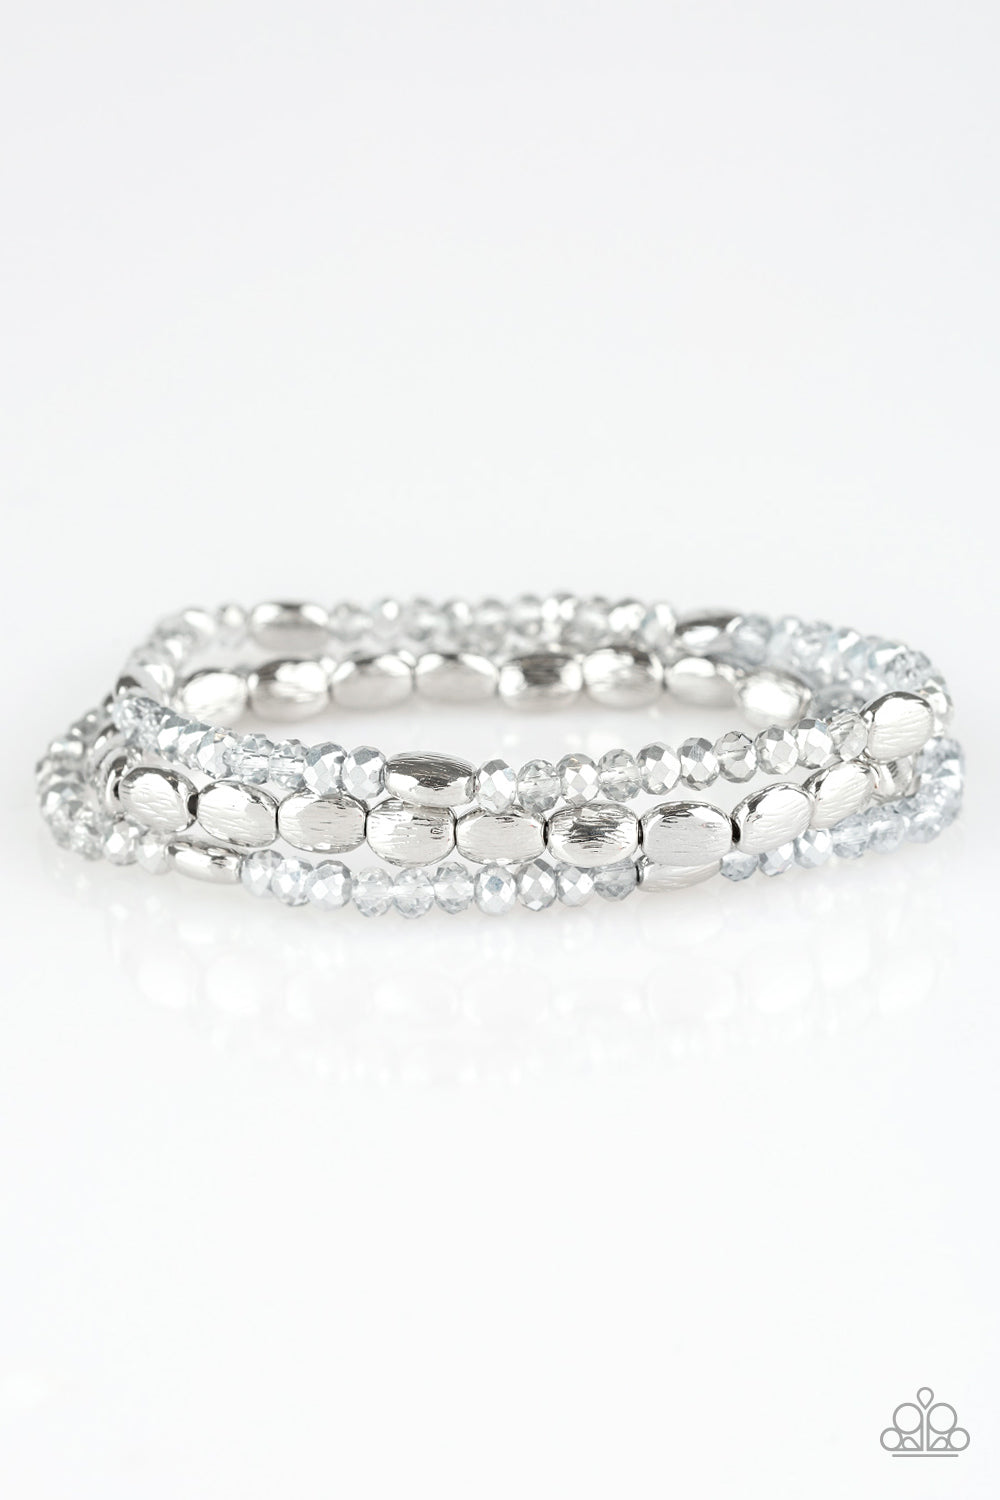 Hello Beautiful - Silver bracelet